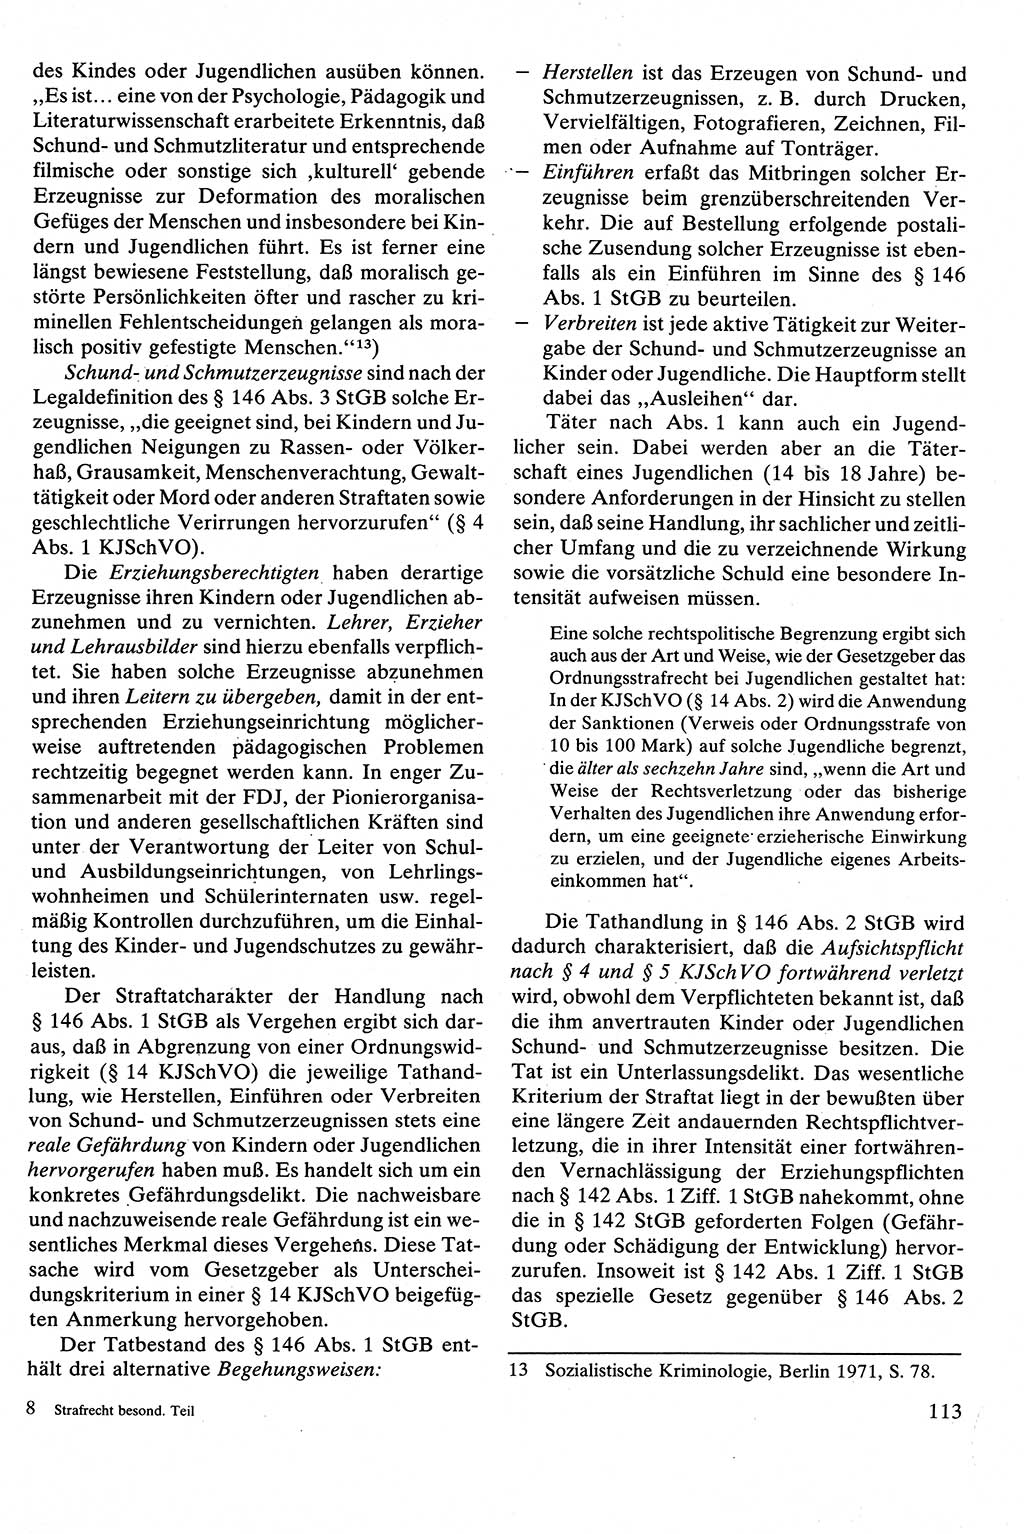 Strafrecht [Deutsche Demokratische Republik (DDR)], Besonderer Teil, Lehrbuch 1981, Seite 113 (Strafr. DDR BT Lb. 1981, S. 113)